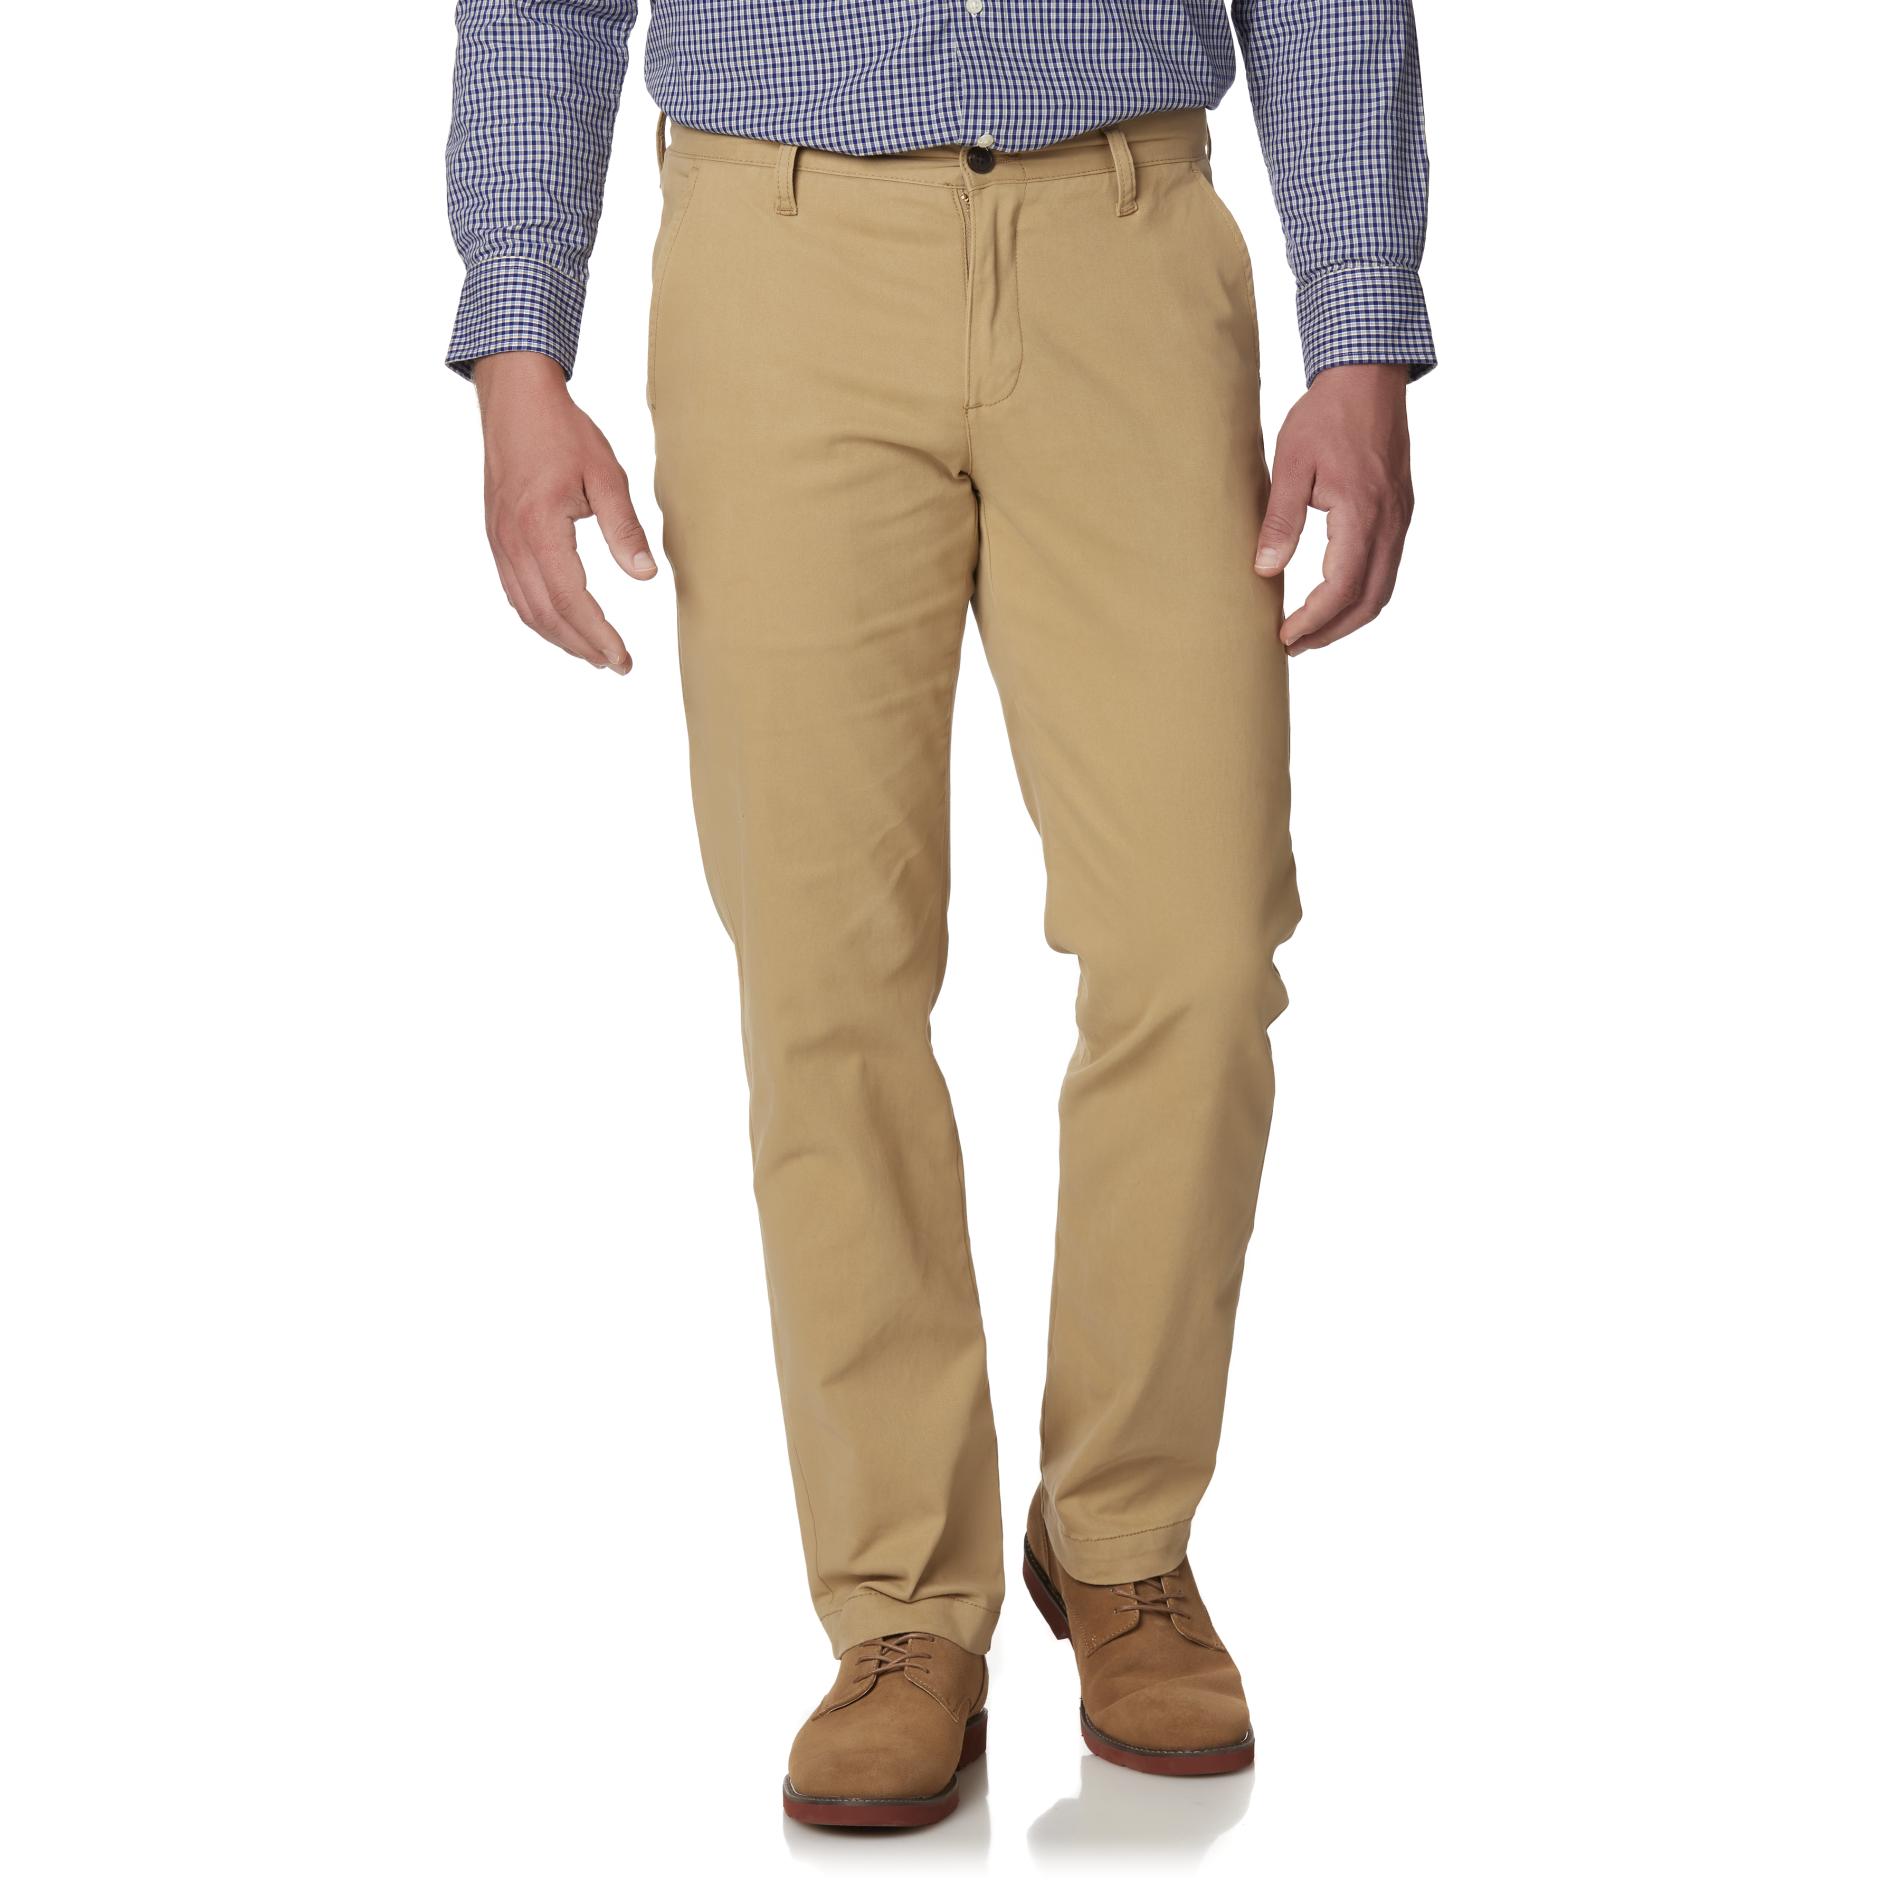 U.S. Polo Assn. Men's Slim Fit Pants | Shop Your Way: Online Shopping ...